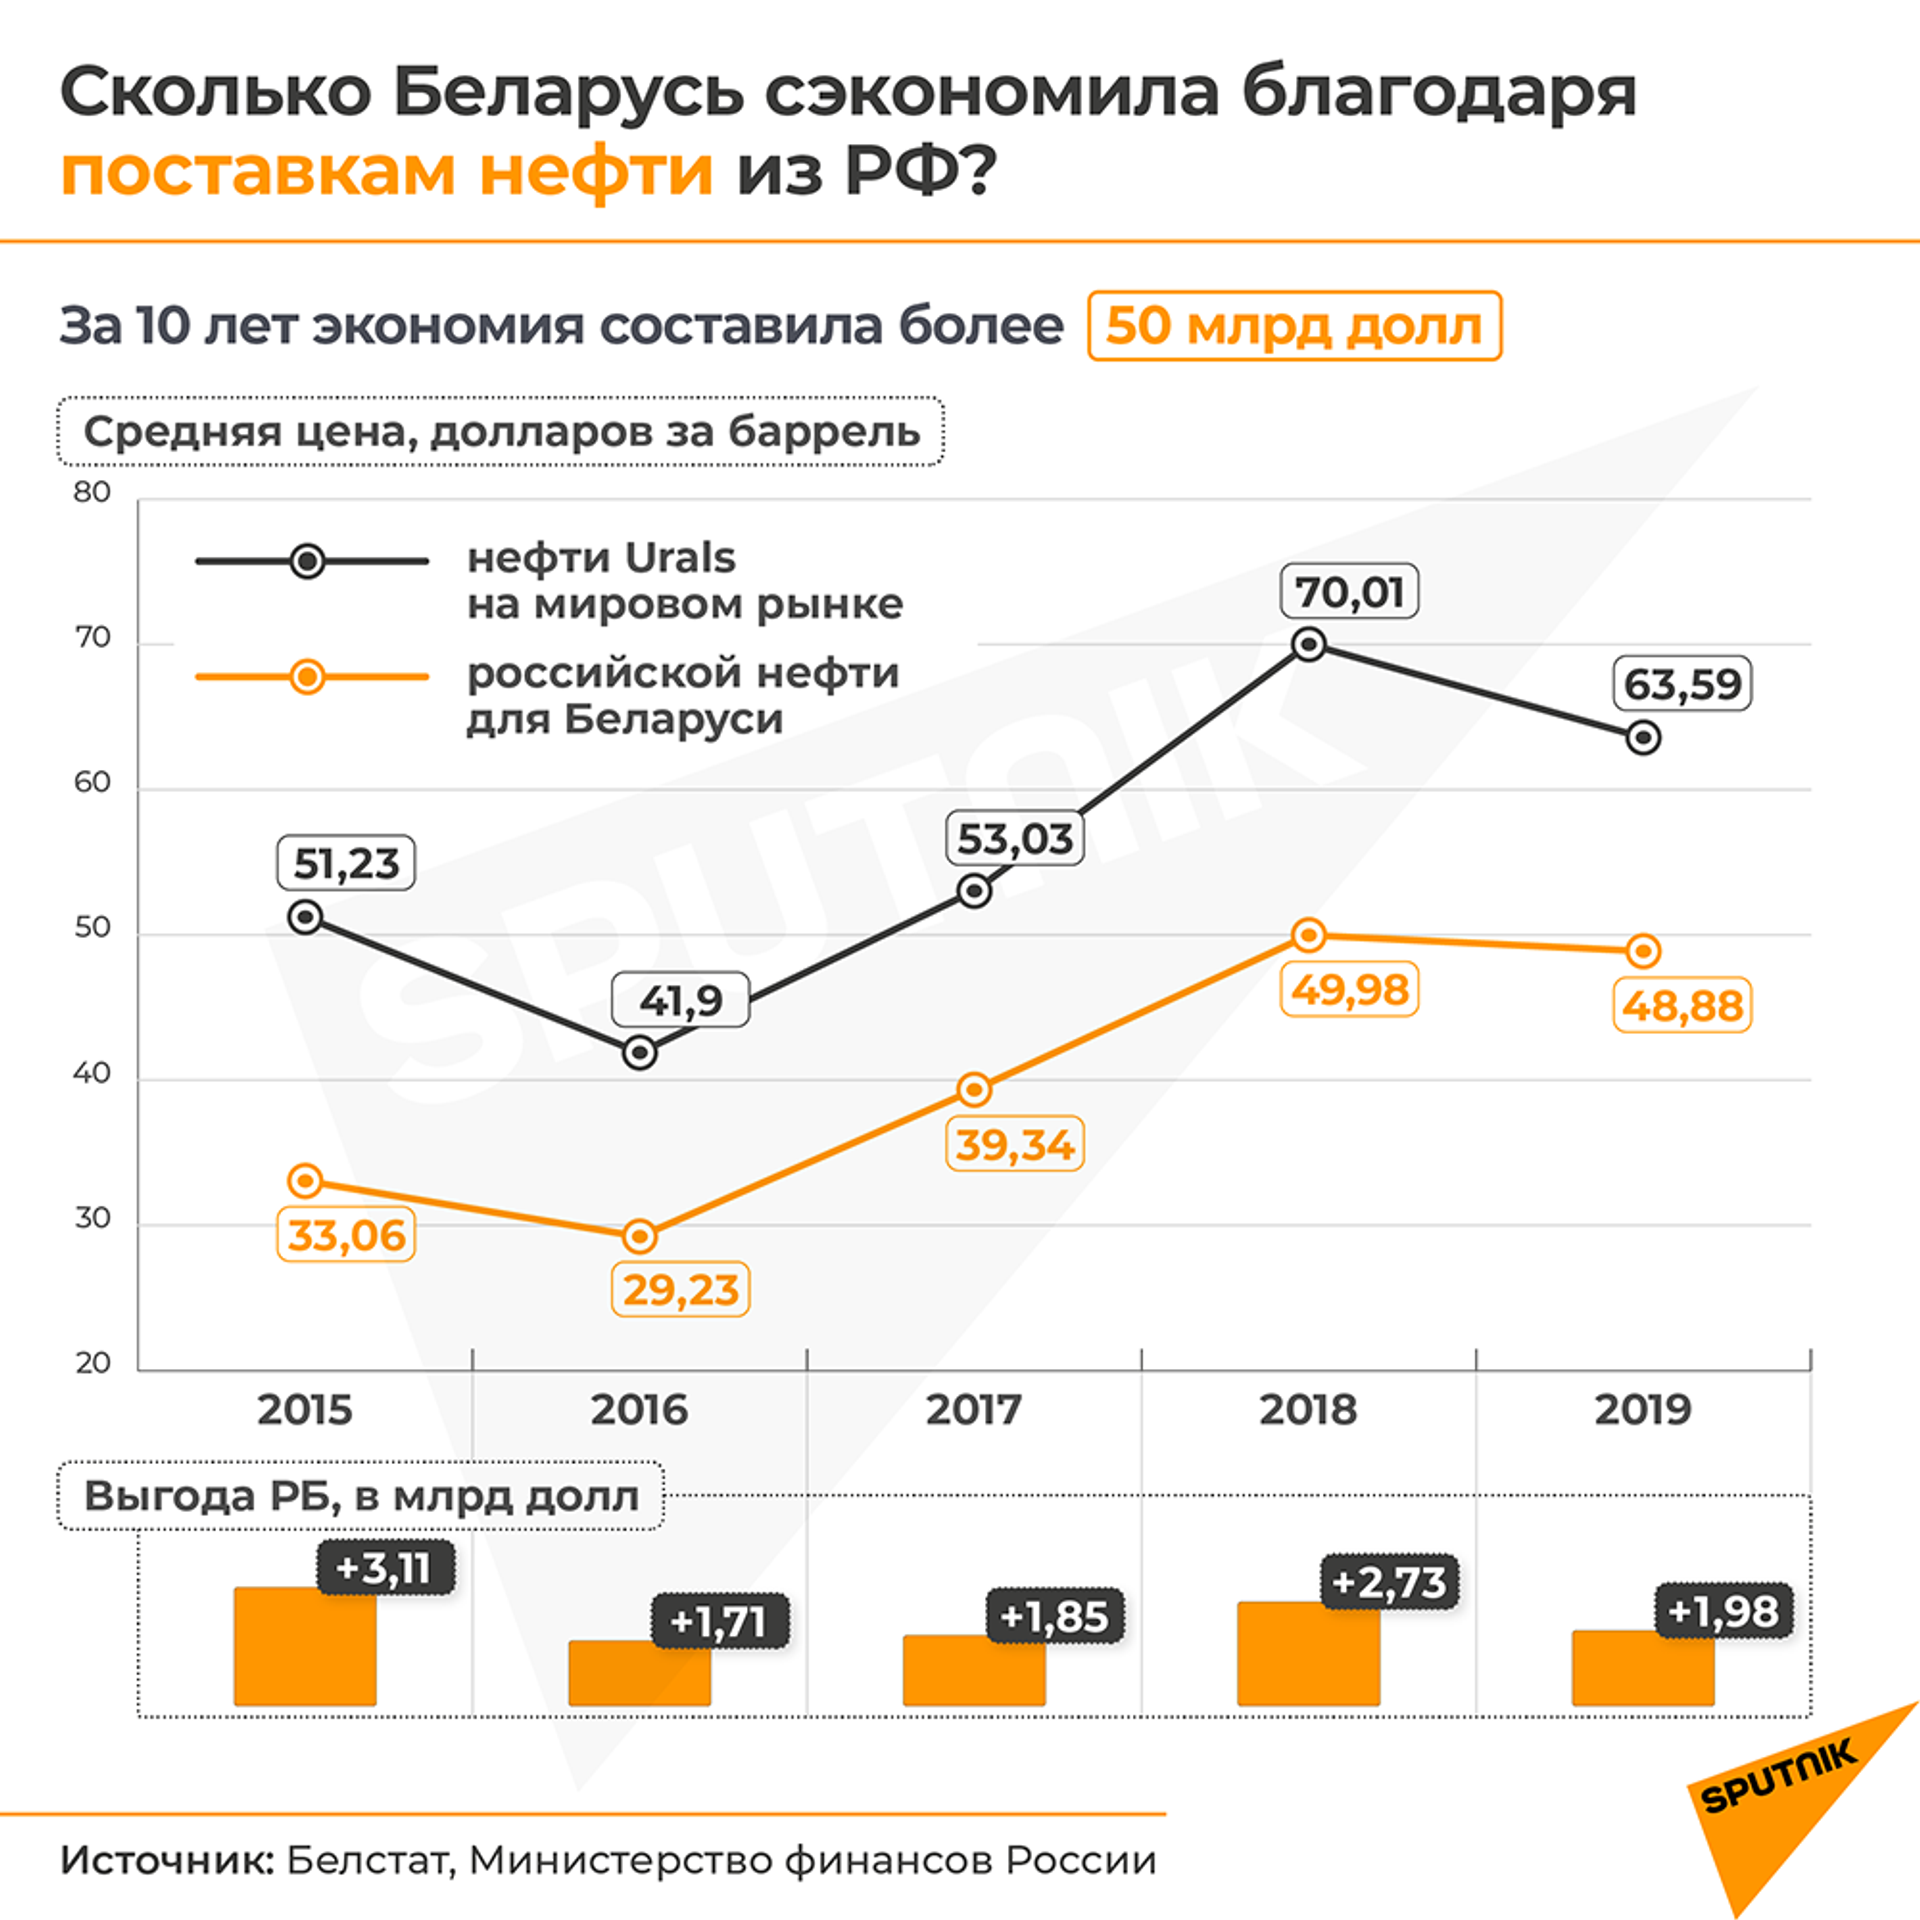 Белнефтехим: контракт на поставки нефти из РФ не хуже, чем в 2020 году - Sputnik Беларусь, 1920, 11.02.2021